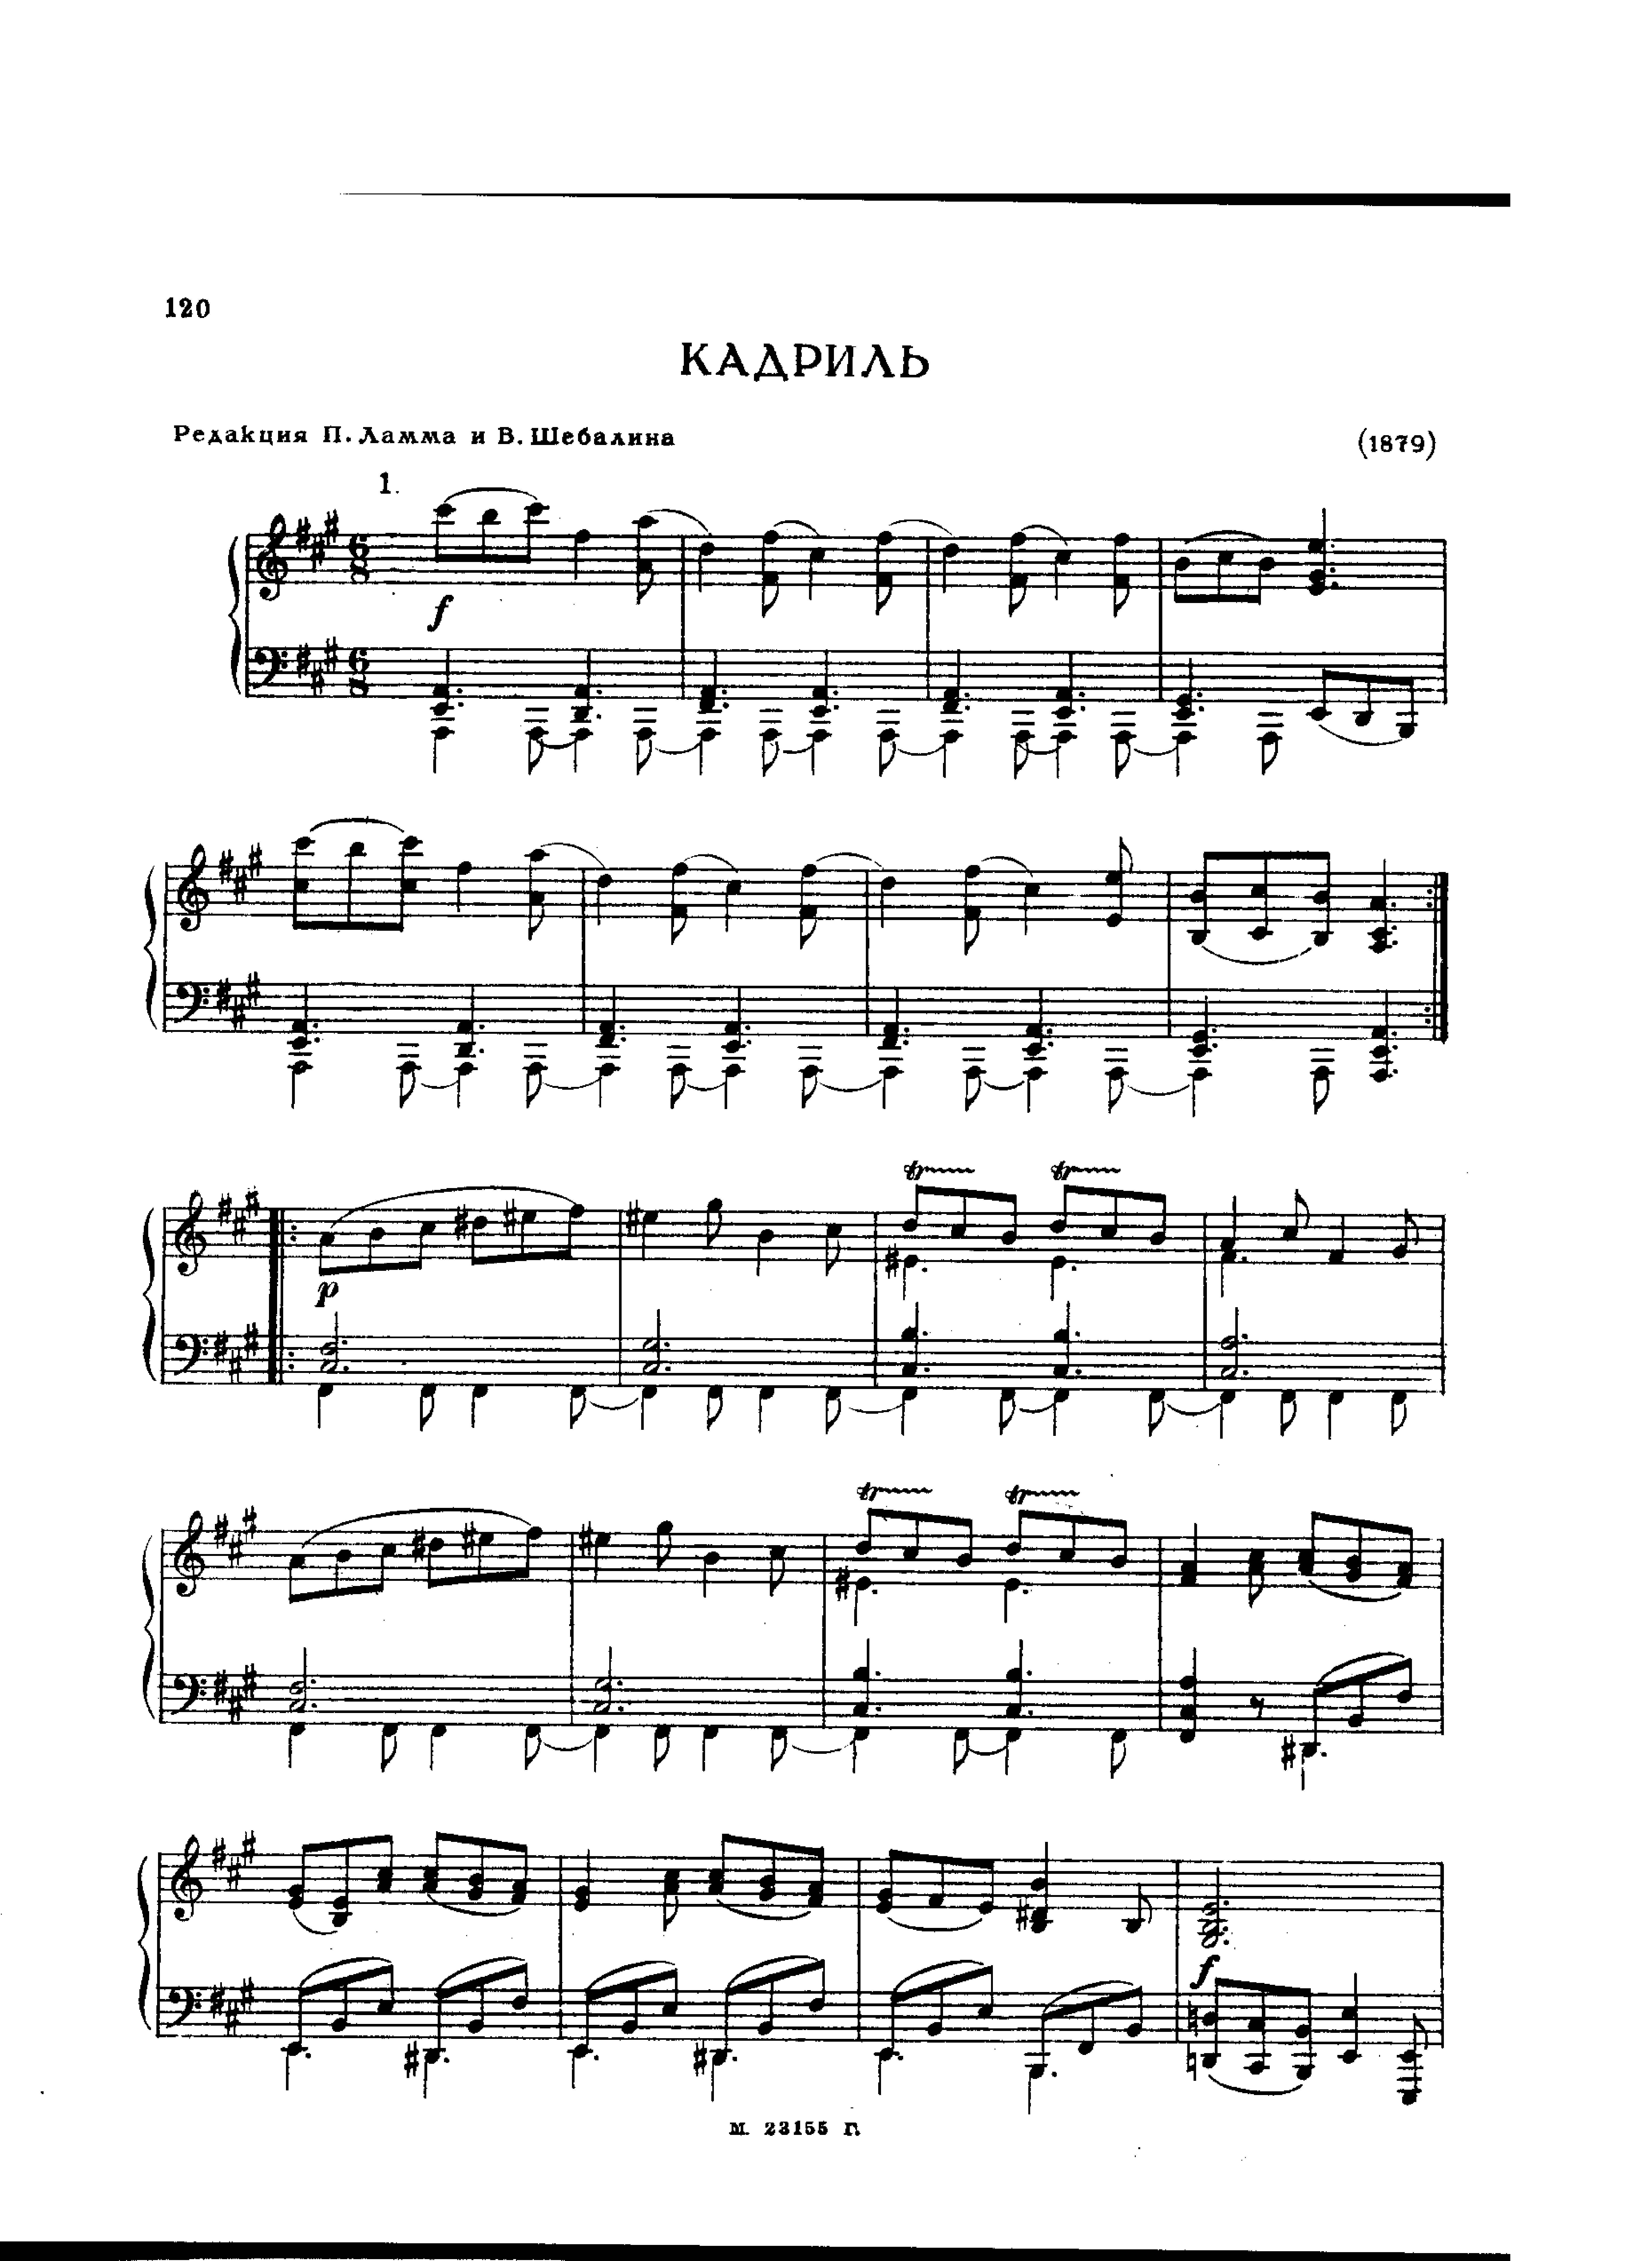 No.1 Quadrilleピアノ譜